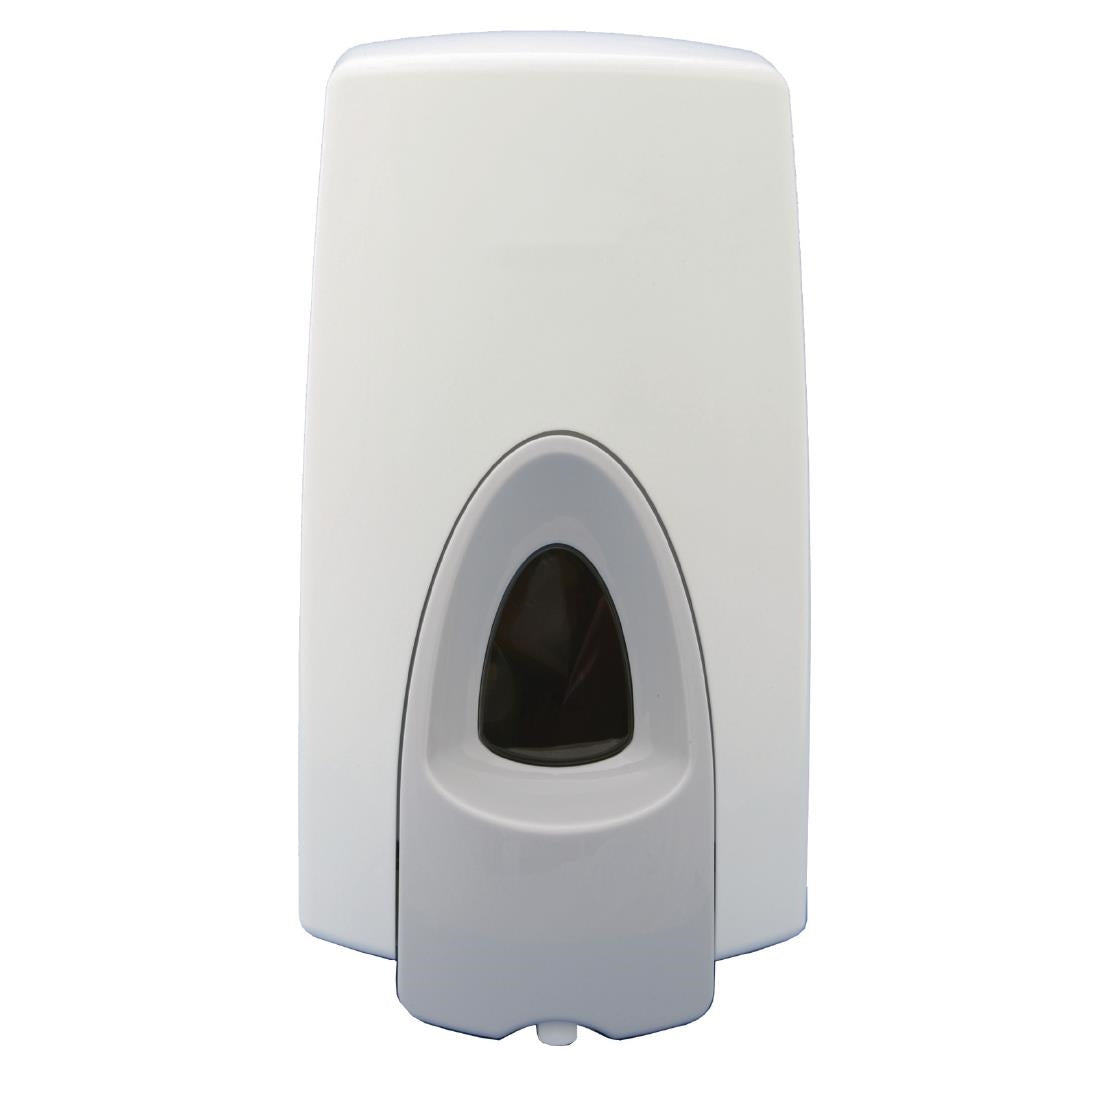 GD843 Rubbermaid Manual Foam Soap & Sanitiser Dispenser 800ml White JD Catering Equipment Solutions Ltd